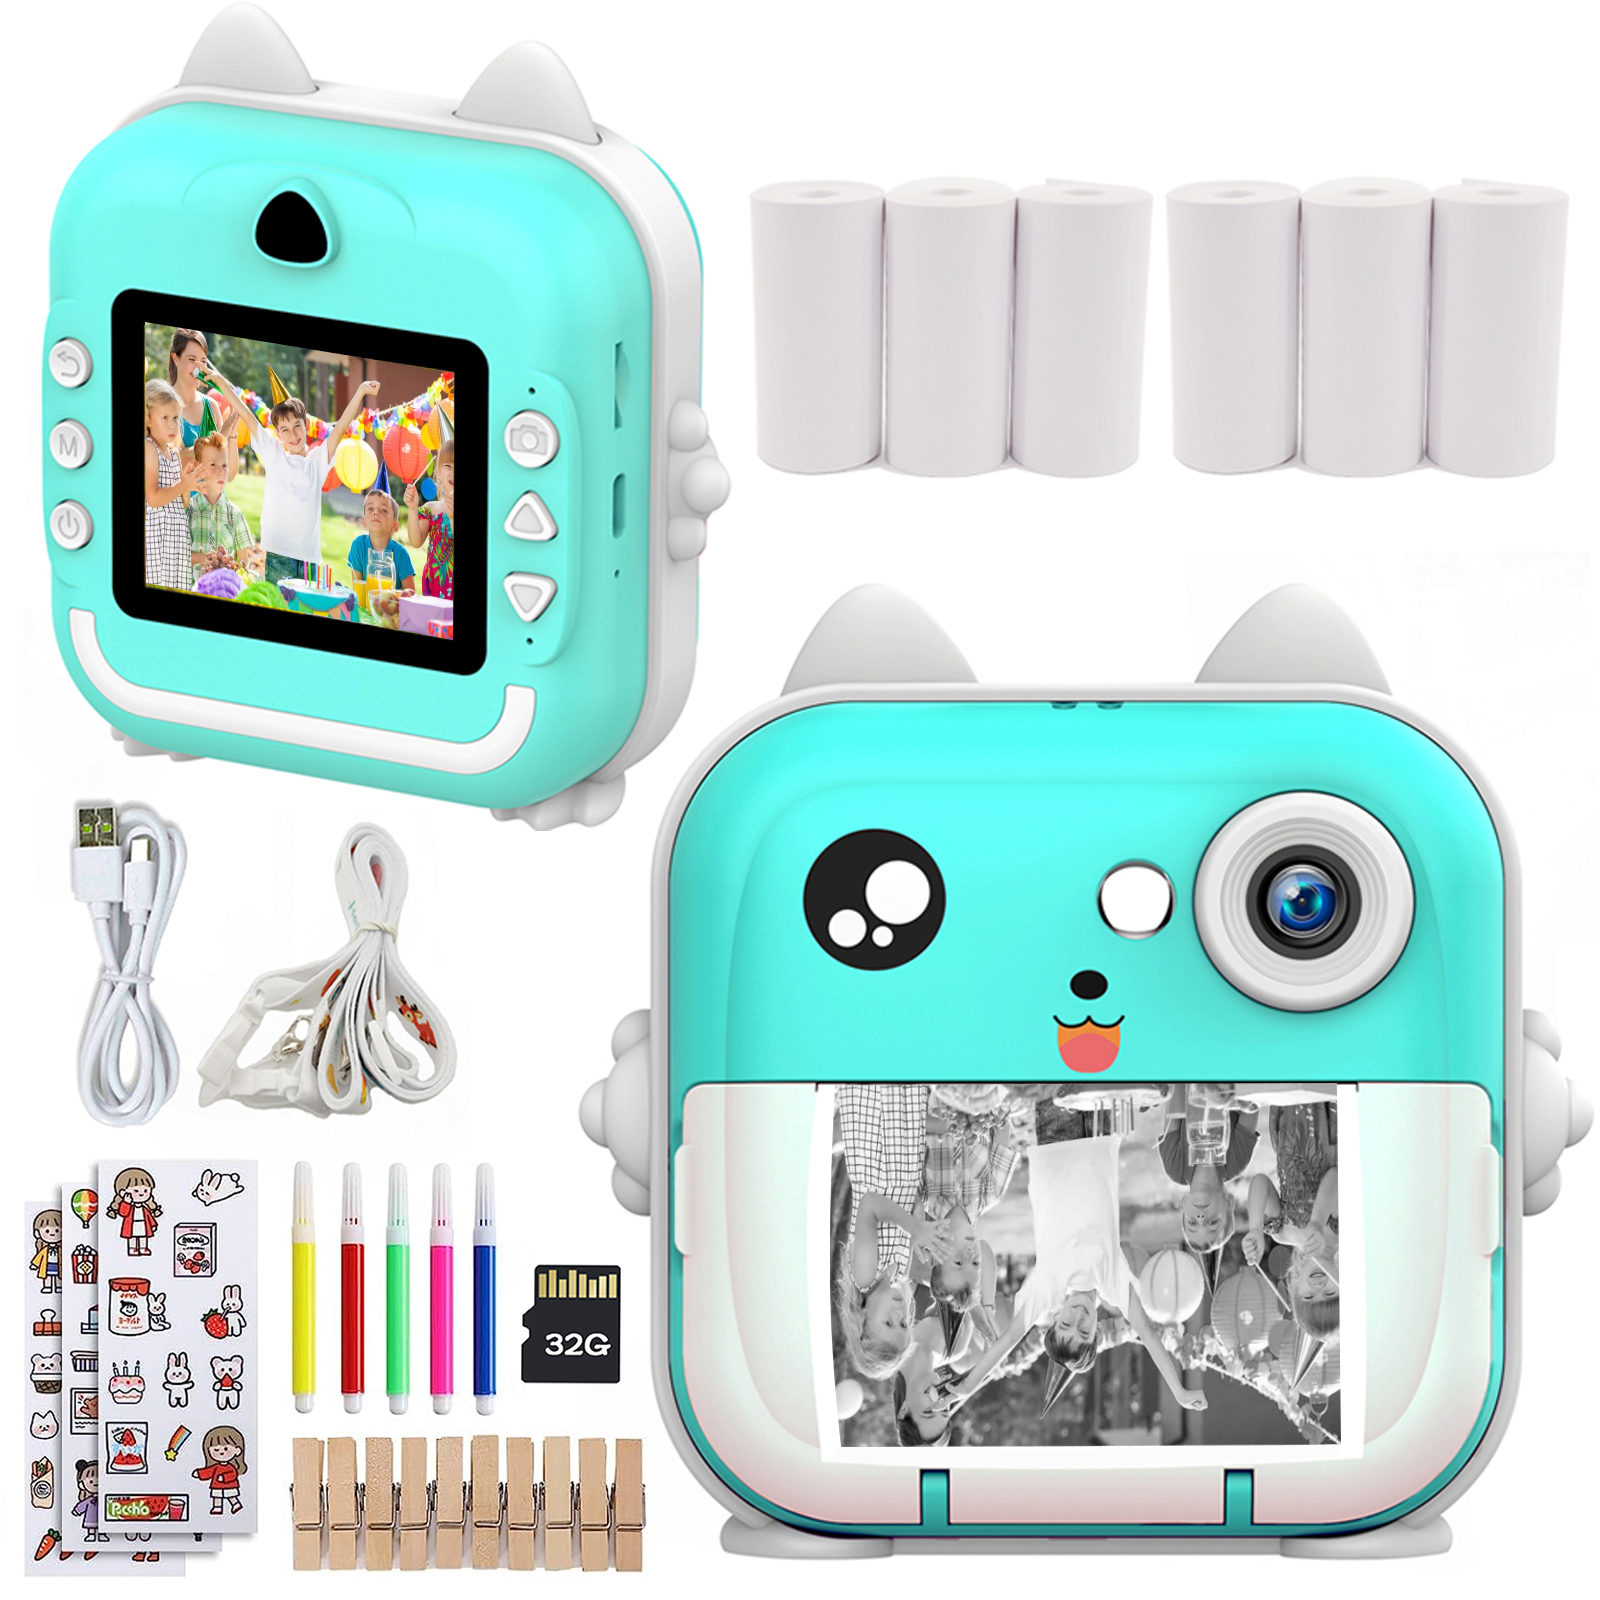 Impressão instantânea foto crianças câmera mini impressora térmica de vídeo digital câmera para fotografia brinquedos educativos presente da menina do menino